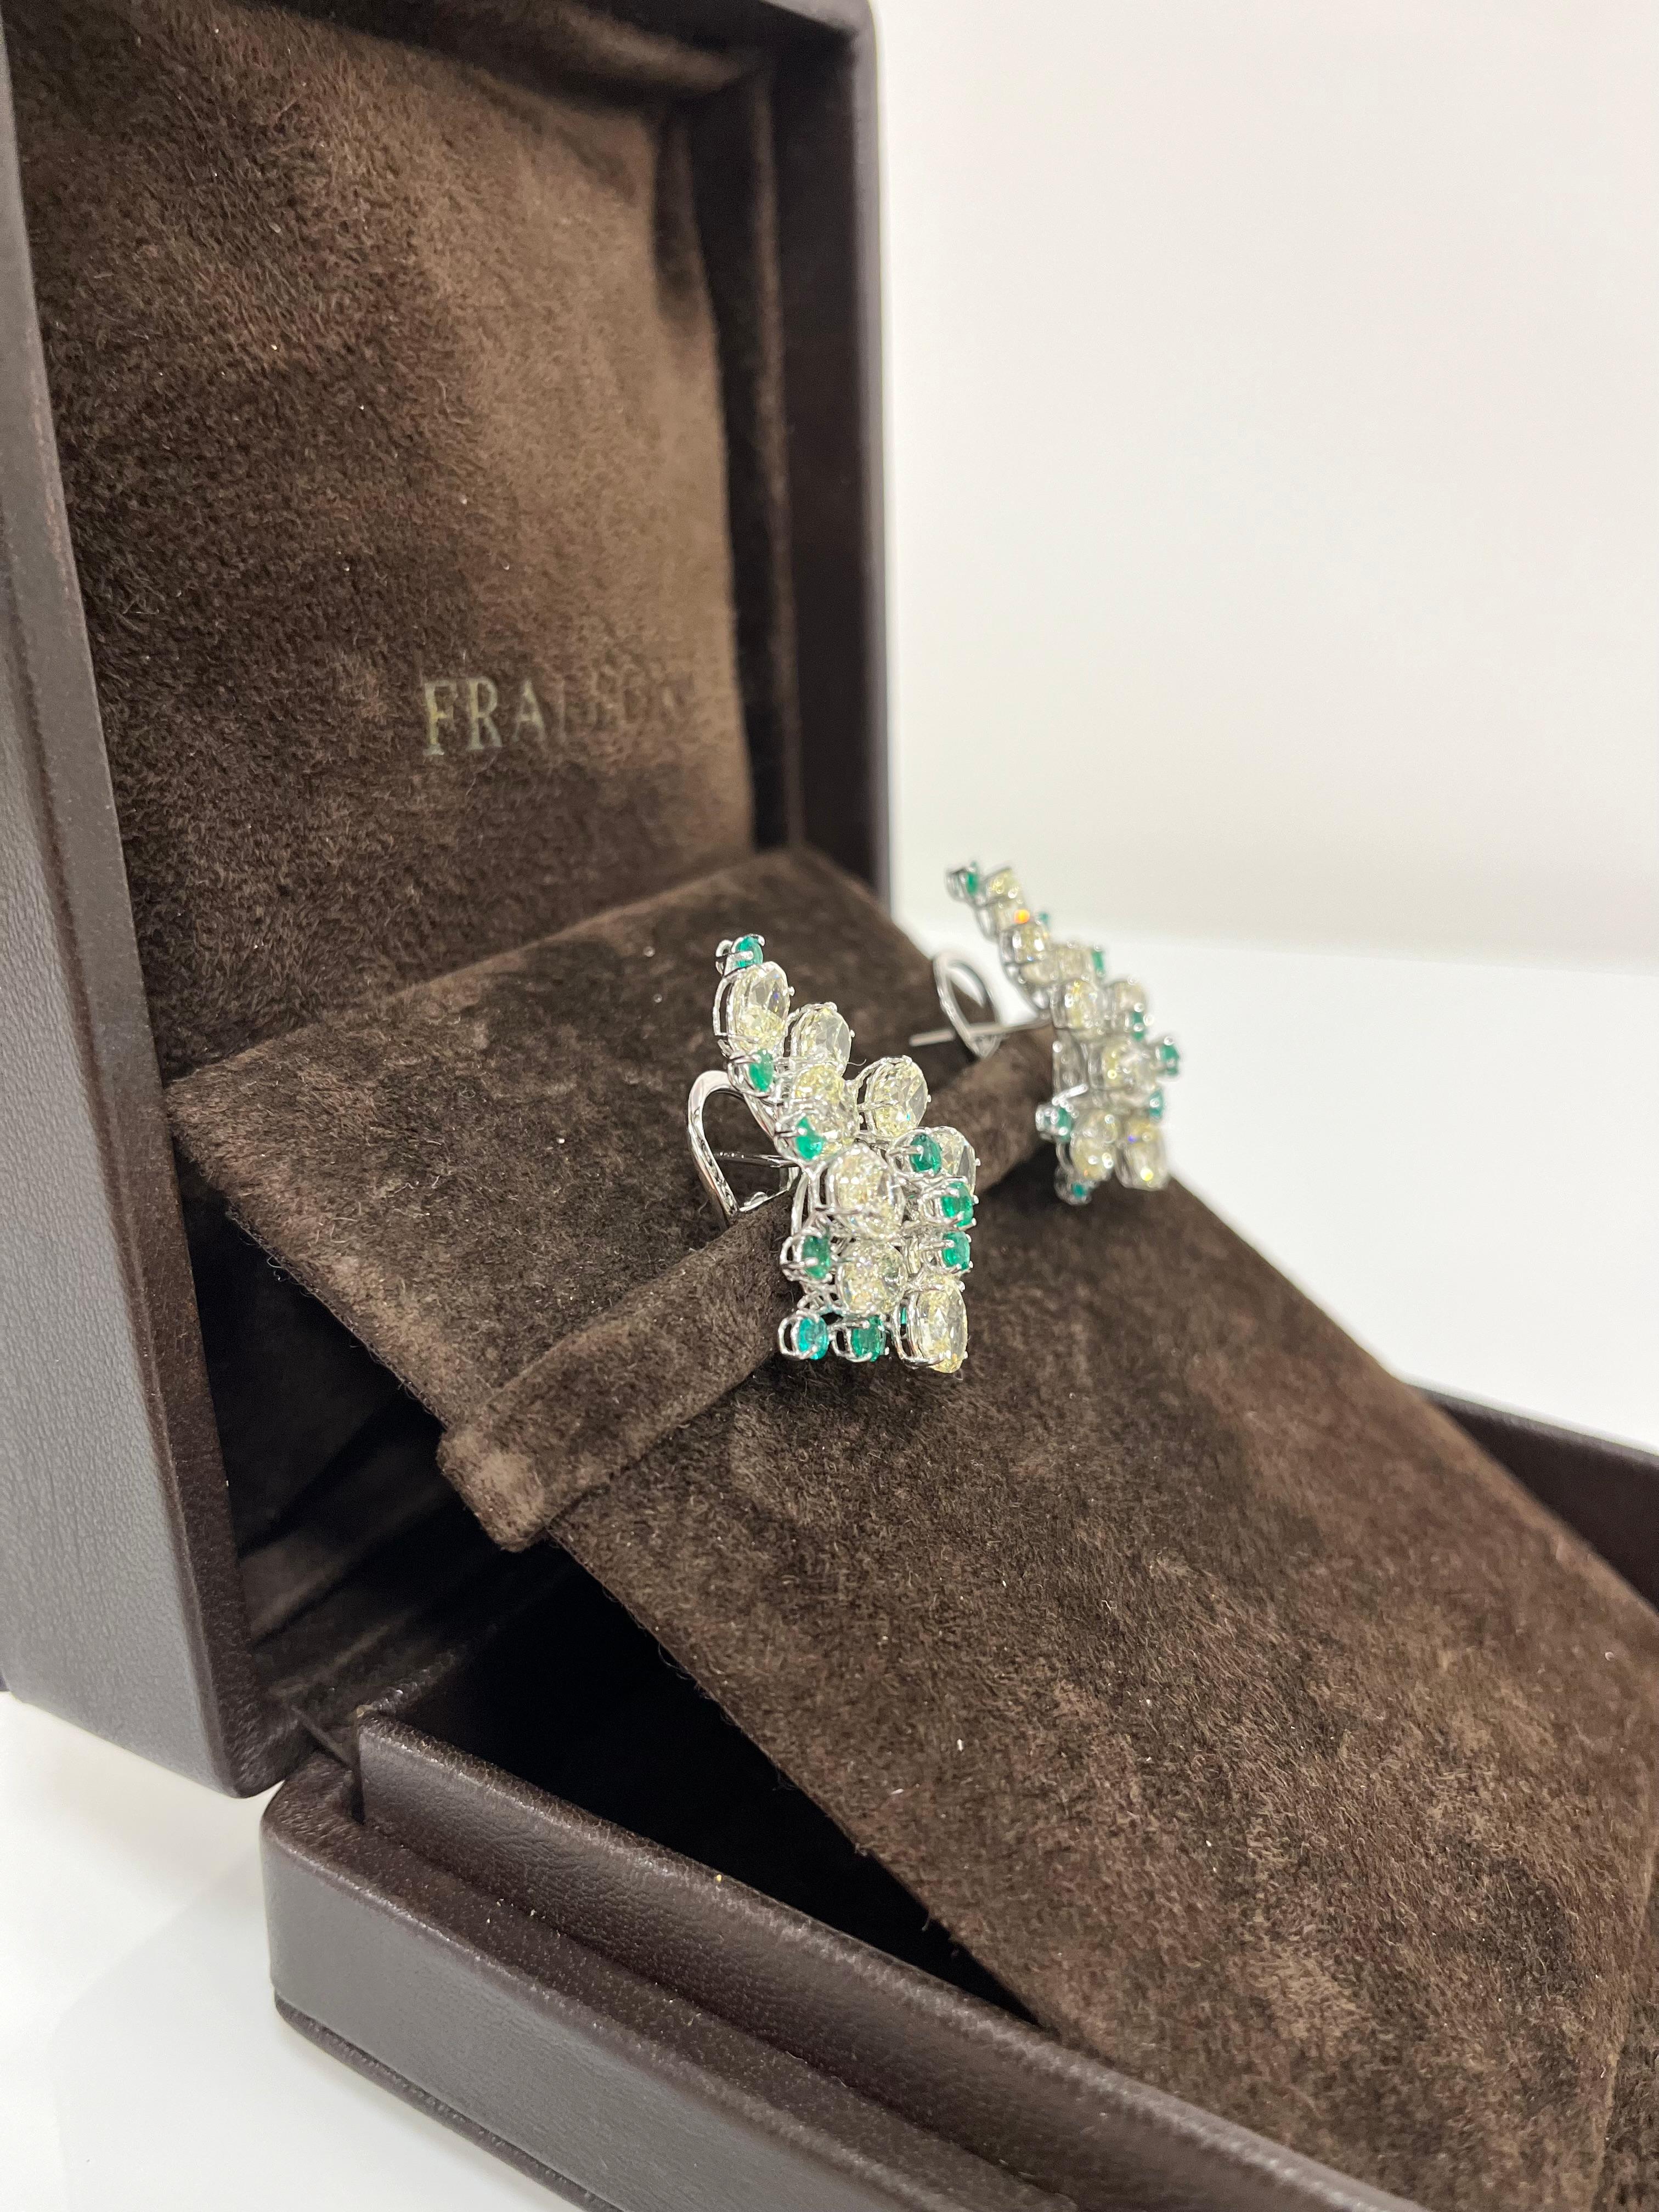 Fraleoni 18 Kt. White Gold Diamonds Emeralds Clip-on earrings For Sale 1